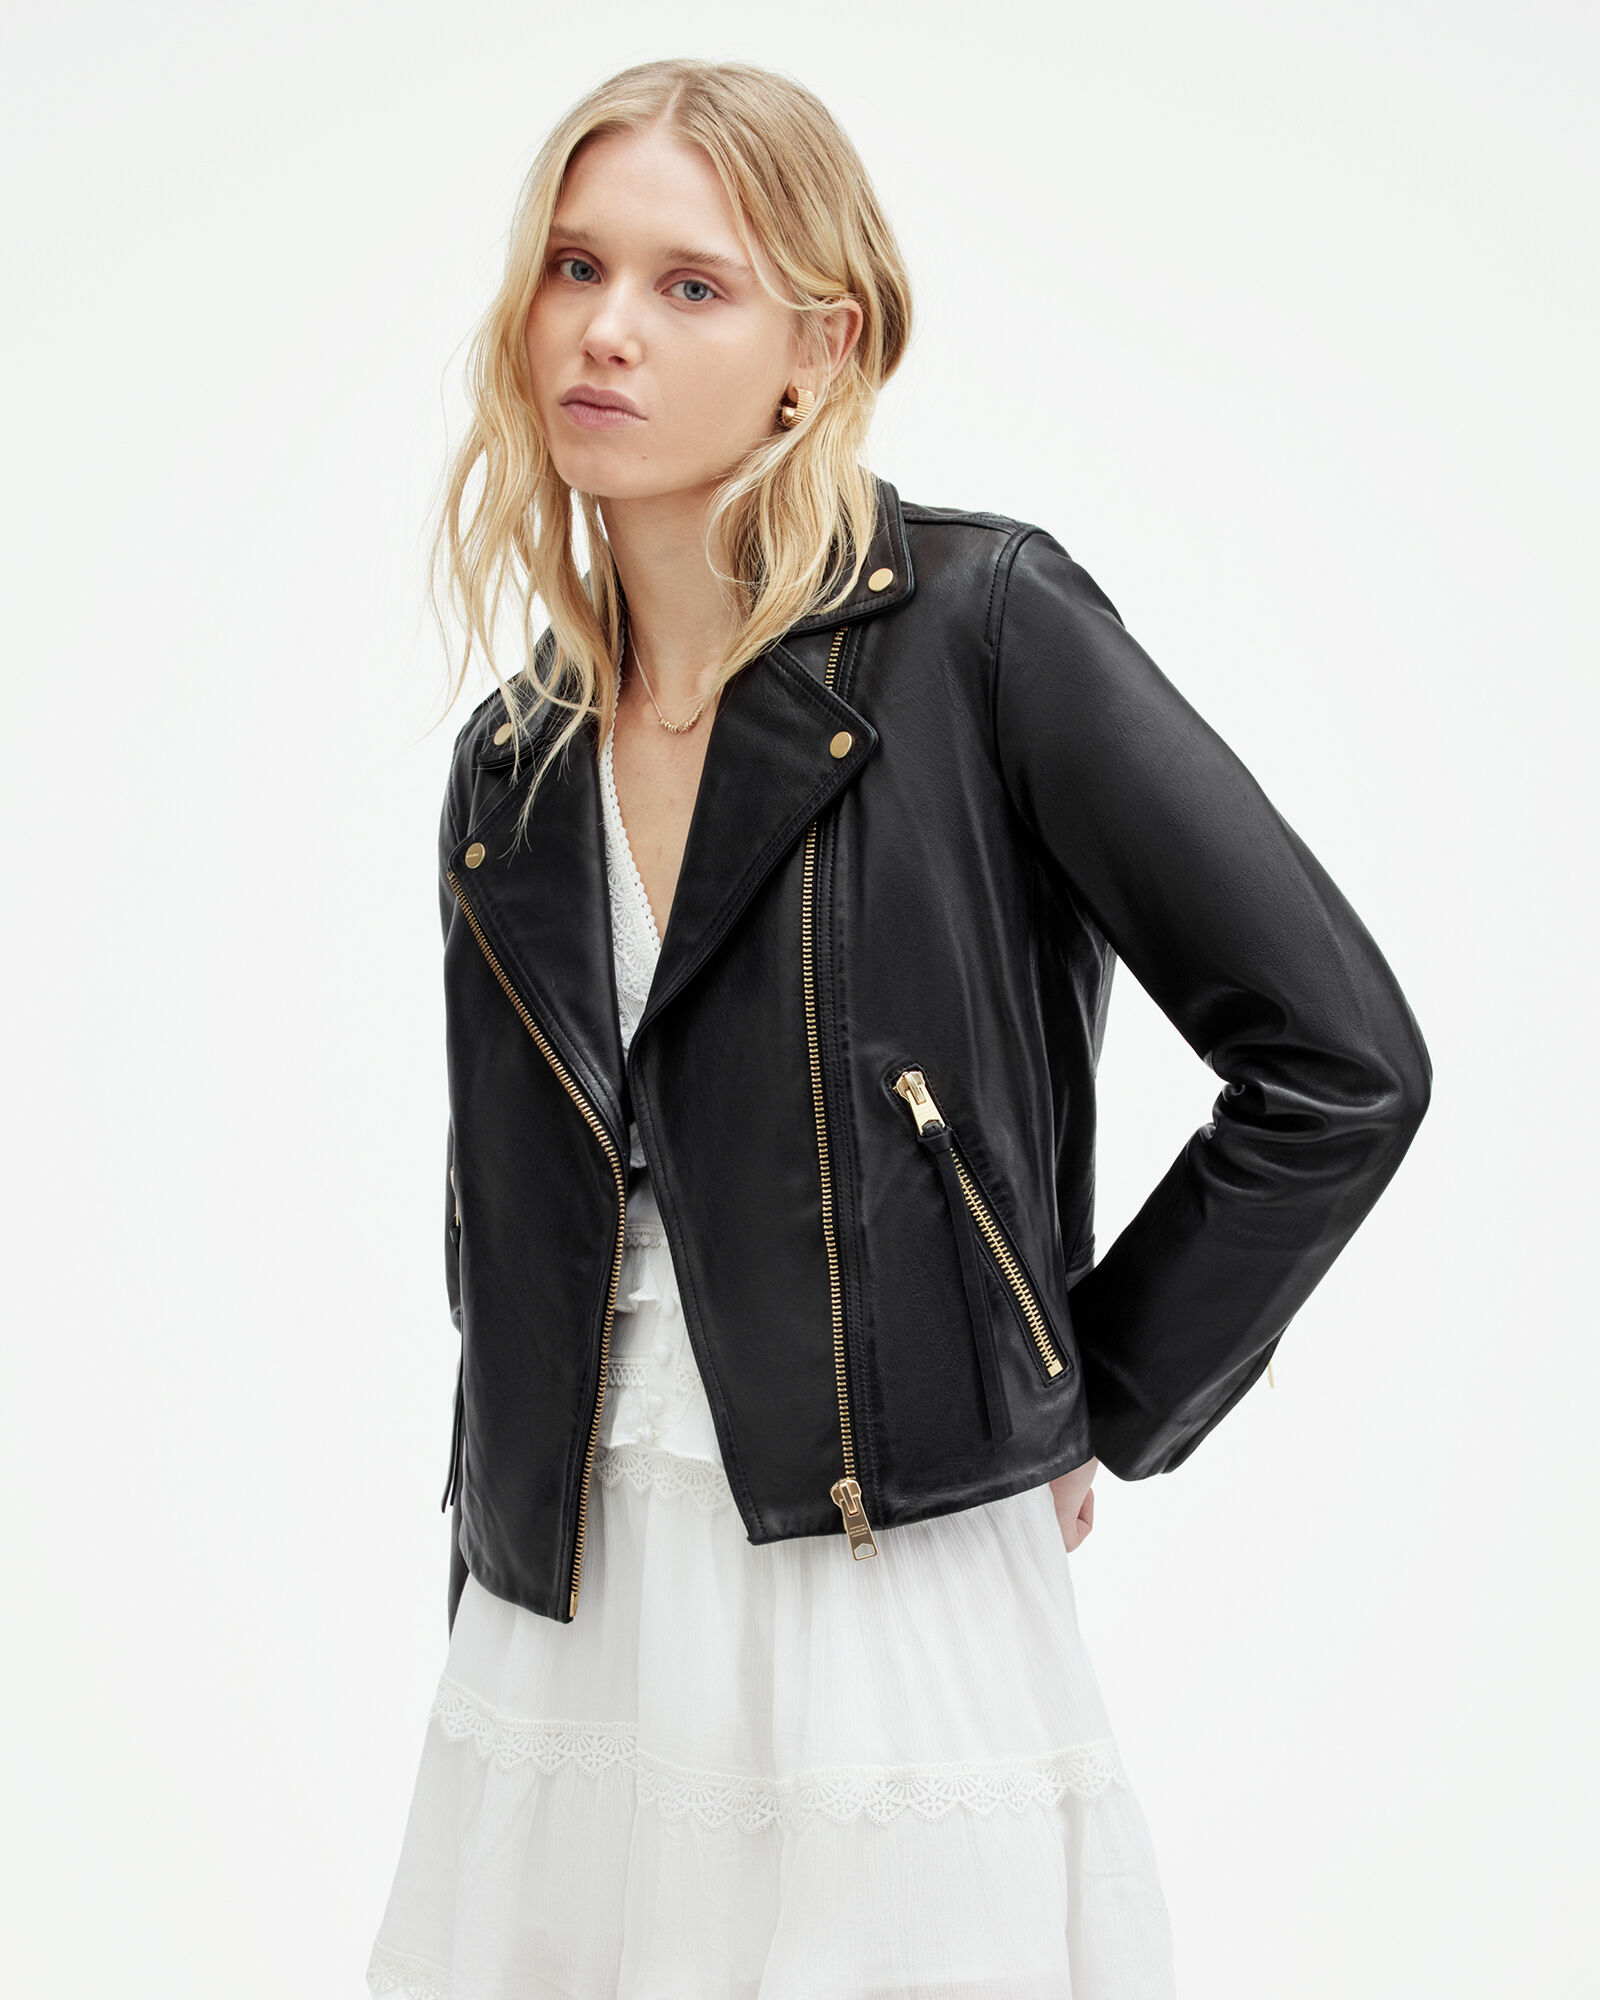 Women Leather Jacket - Buy Women Leather Jacket online in India